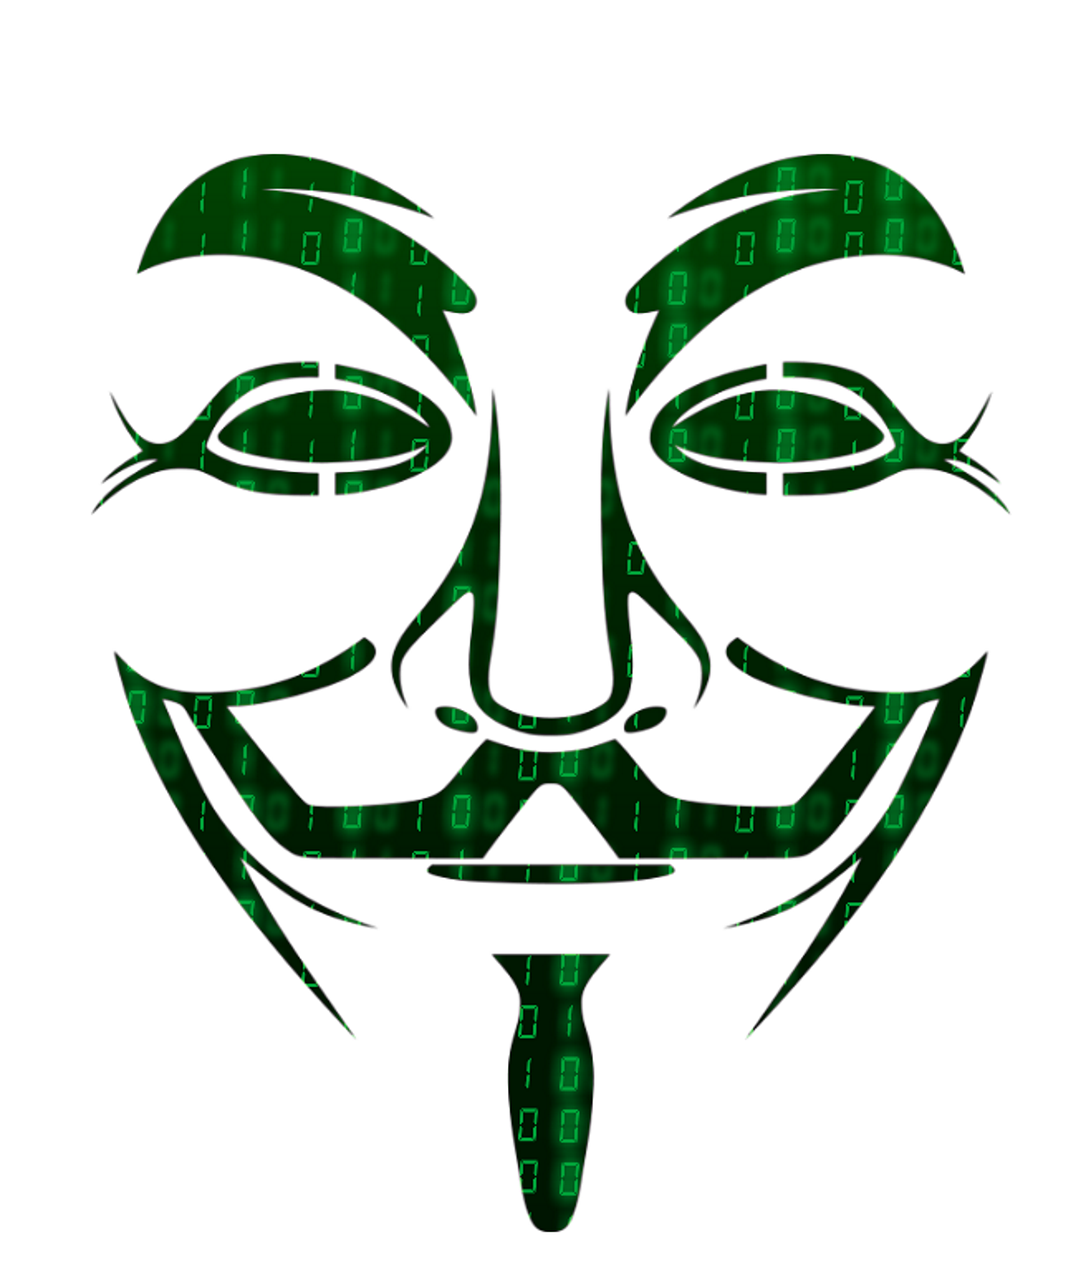 Įsilaužėlis, Anoniminė Kaukė, Anoniminis, Matrica, Įsilaužti, Kibernetinė Sauga, Elektroninė, Internetas, Tinklas, Įsilaužimas